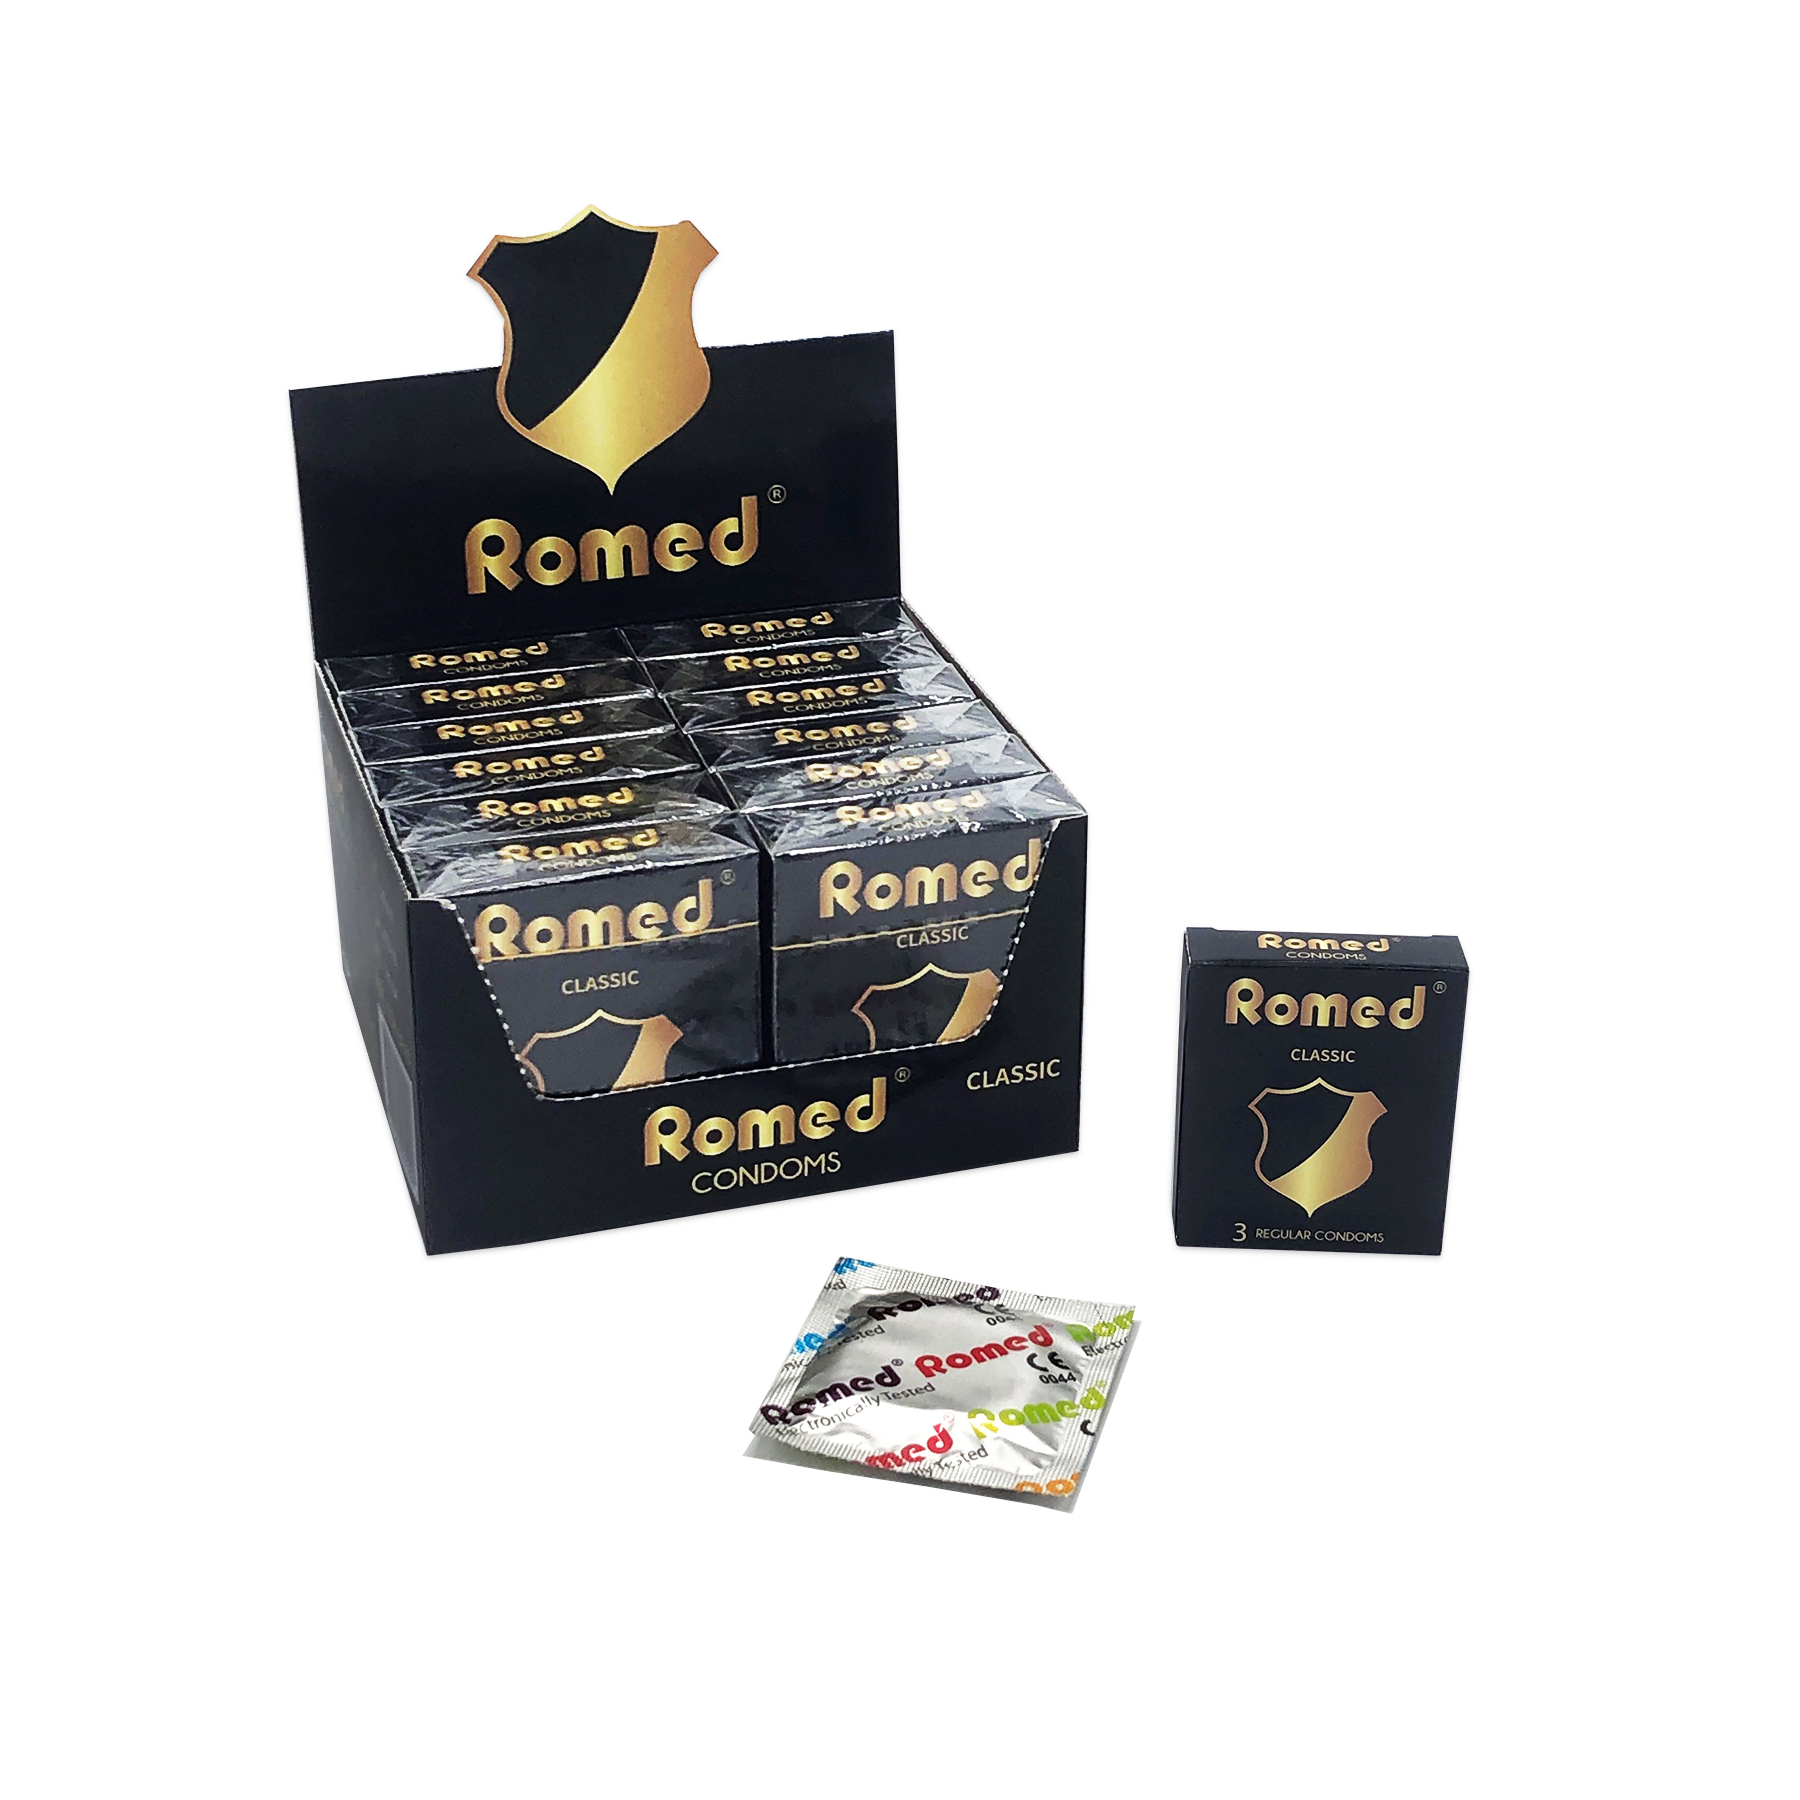 CON3P40 Romed condooms, per stuk verpakt in (vierkante) folie, 3 stuks in een doosje, 12 x 3 stuks = 36 stuks in een presentatie doos, 4 x 36 stuks = 144 stuks in een binnendoos (= 1 gros), 30 x 144 stuks = 4.320 stuks in een carton.